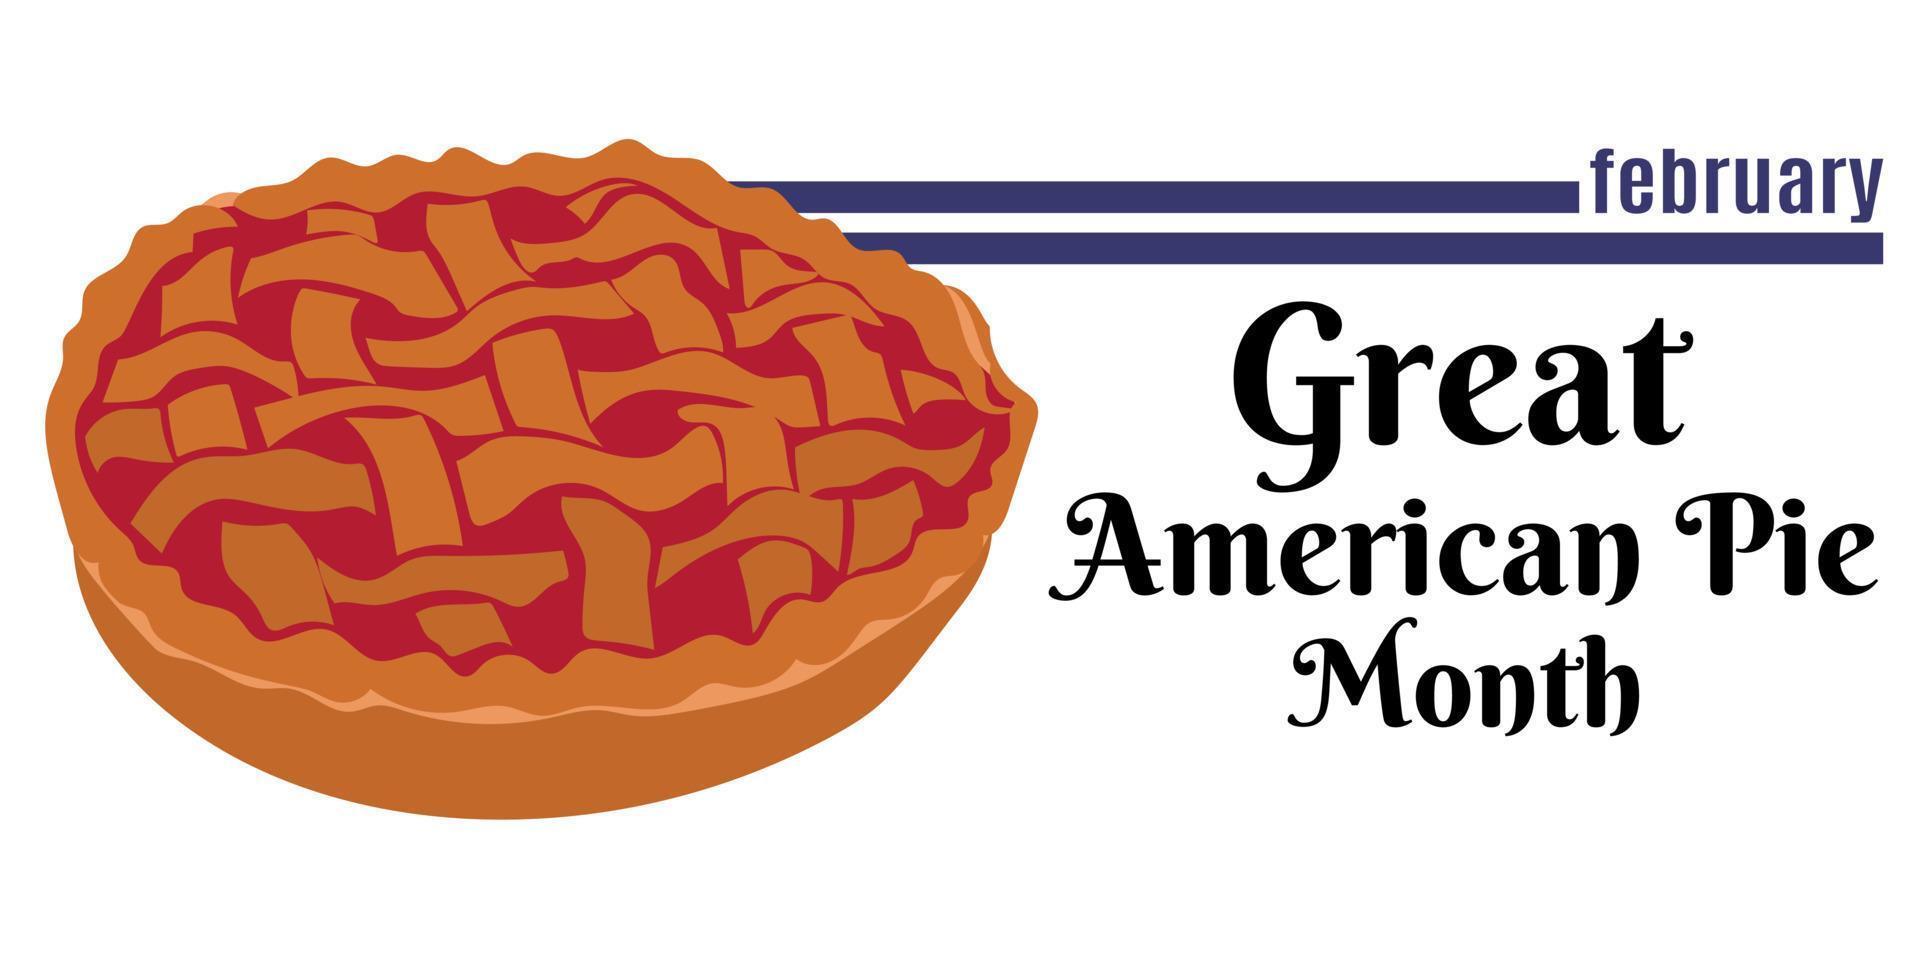 Super goed Amerikaans taart maand, idee voor een horizontaal ontwerp voor een evenement of menu ontwerp vector